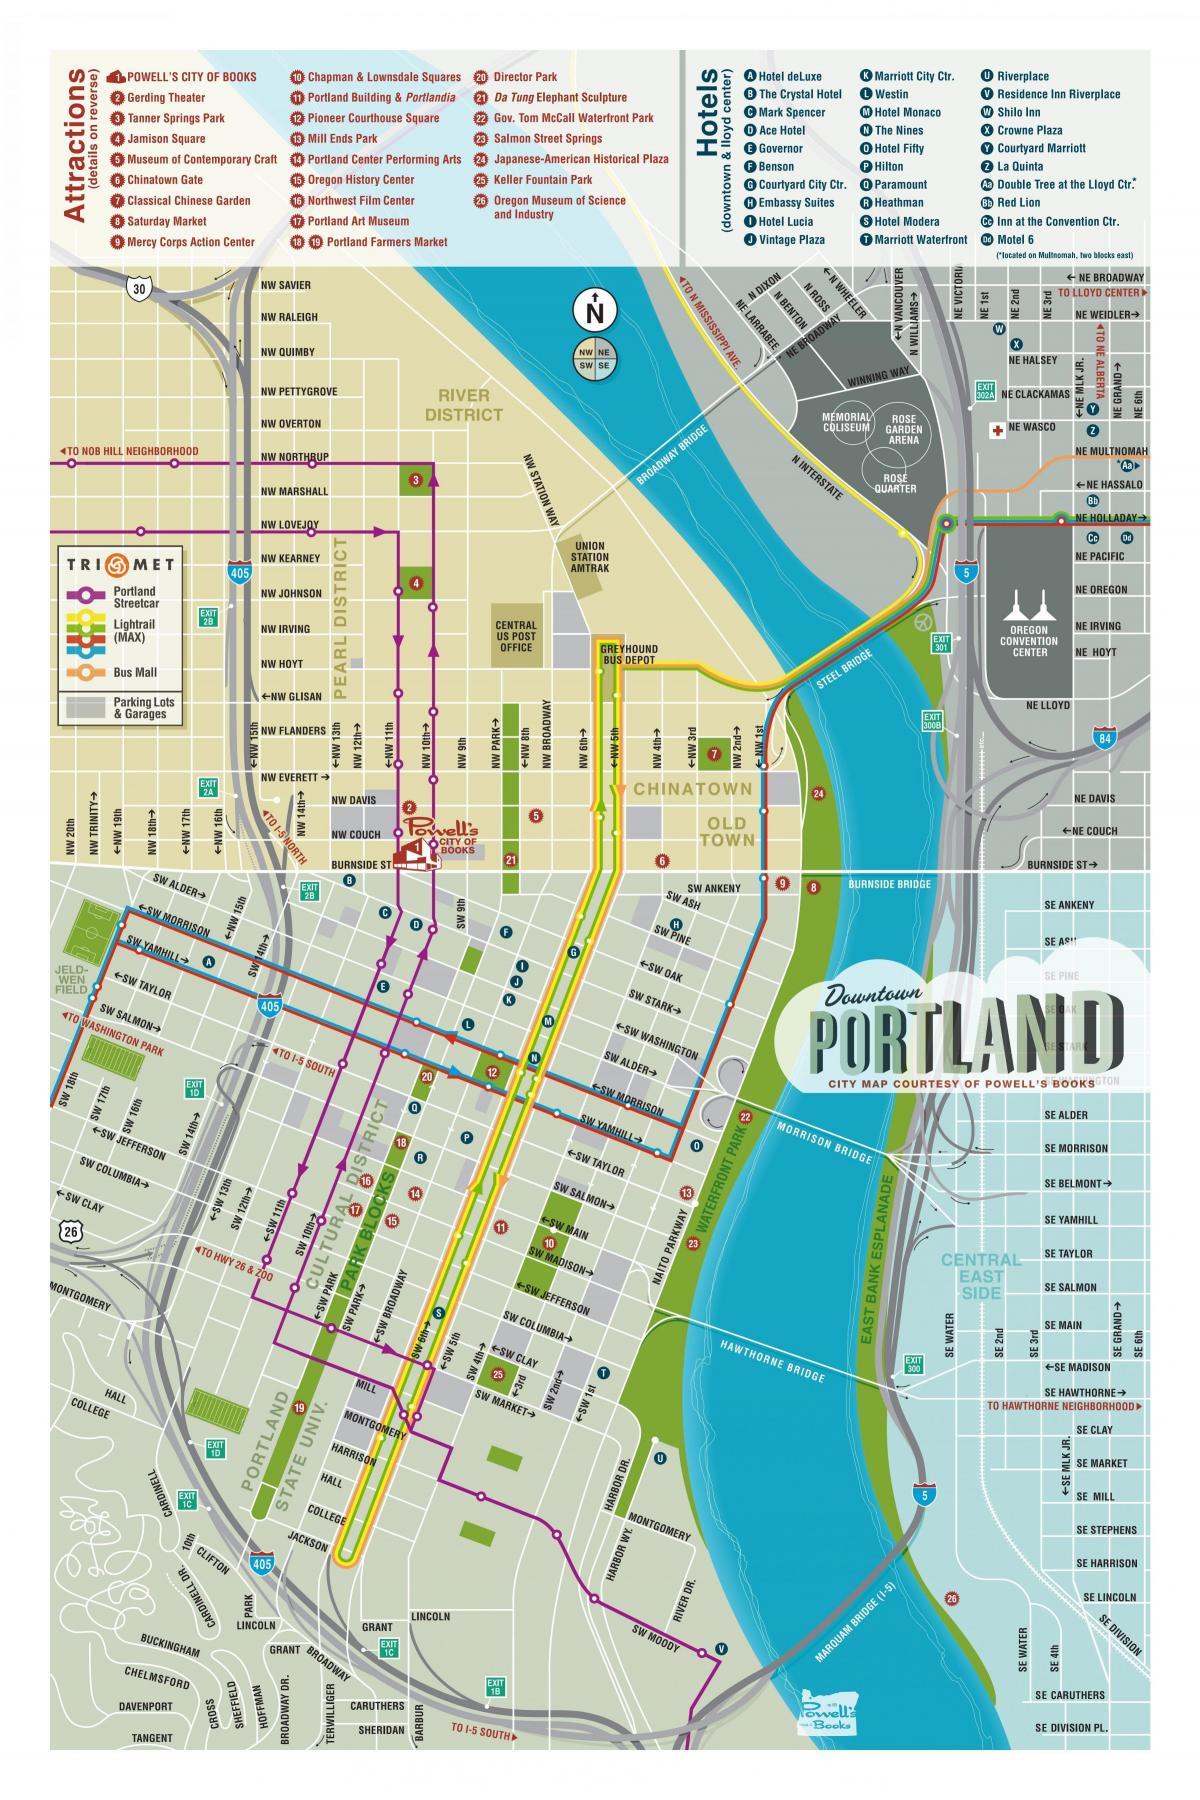 Portland lankytinos vietos žemėlapyje